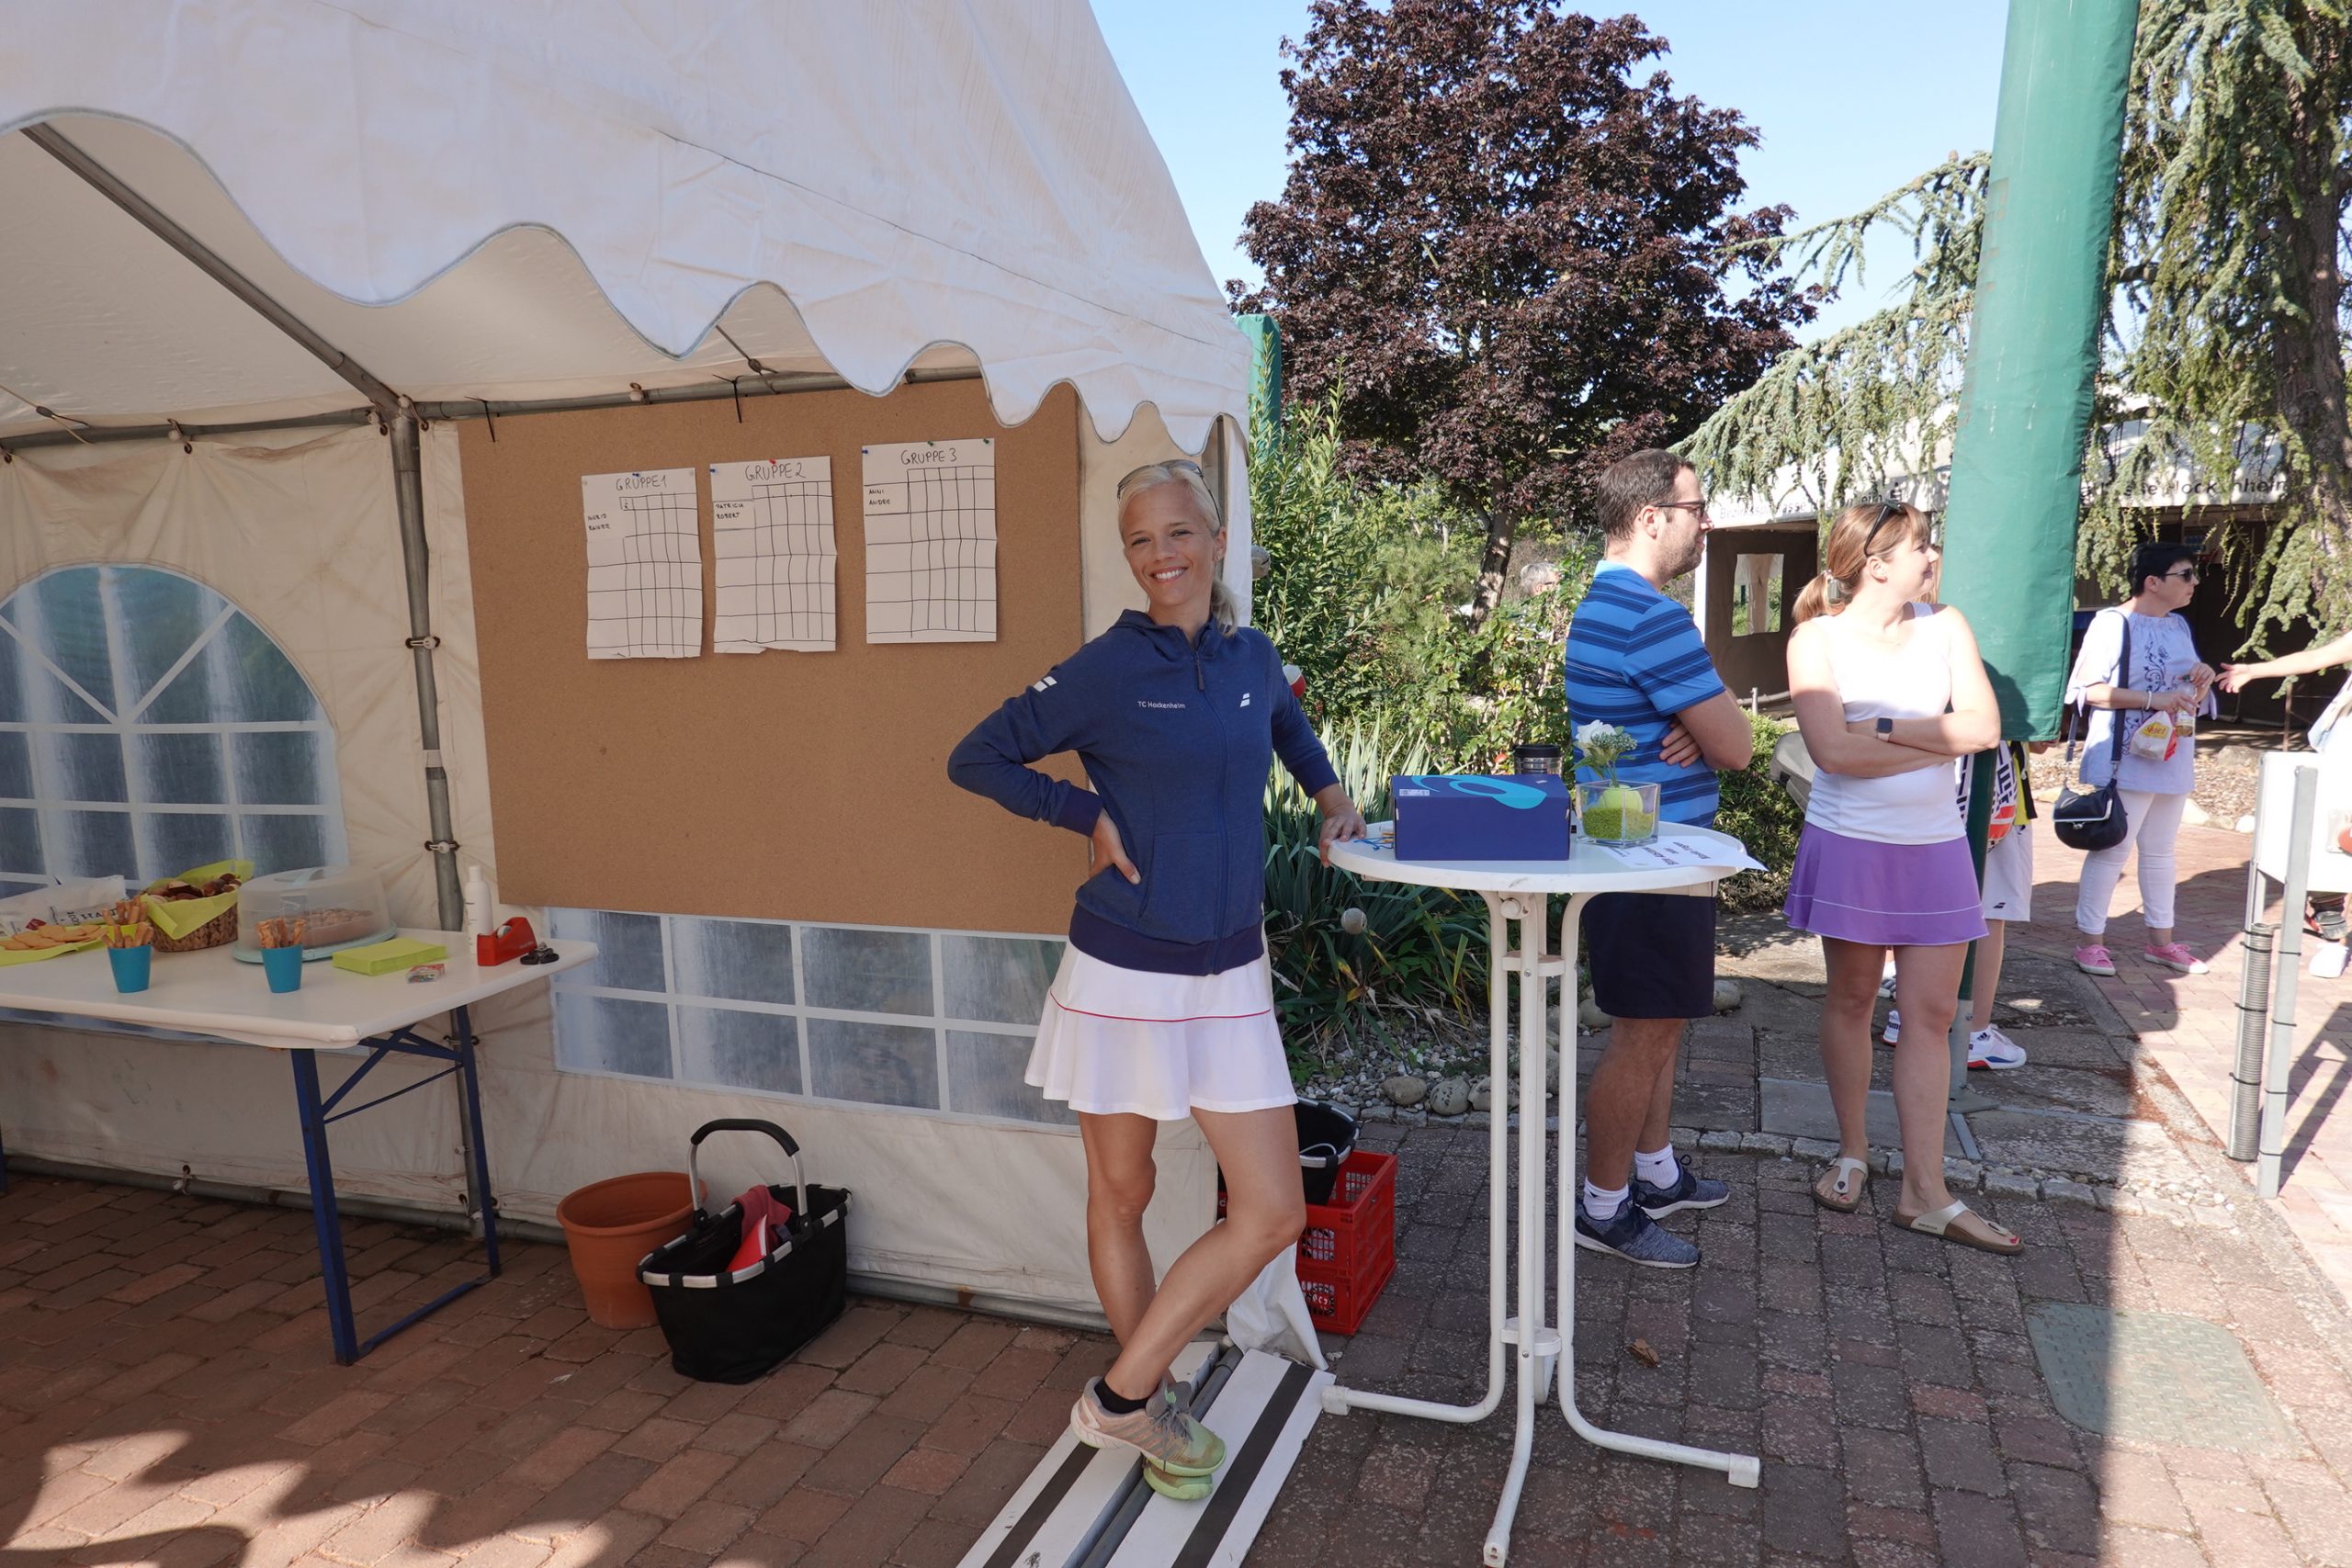 Pfingsten-Camp Tennisschule Voinea